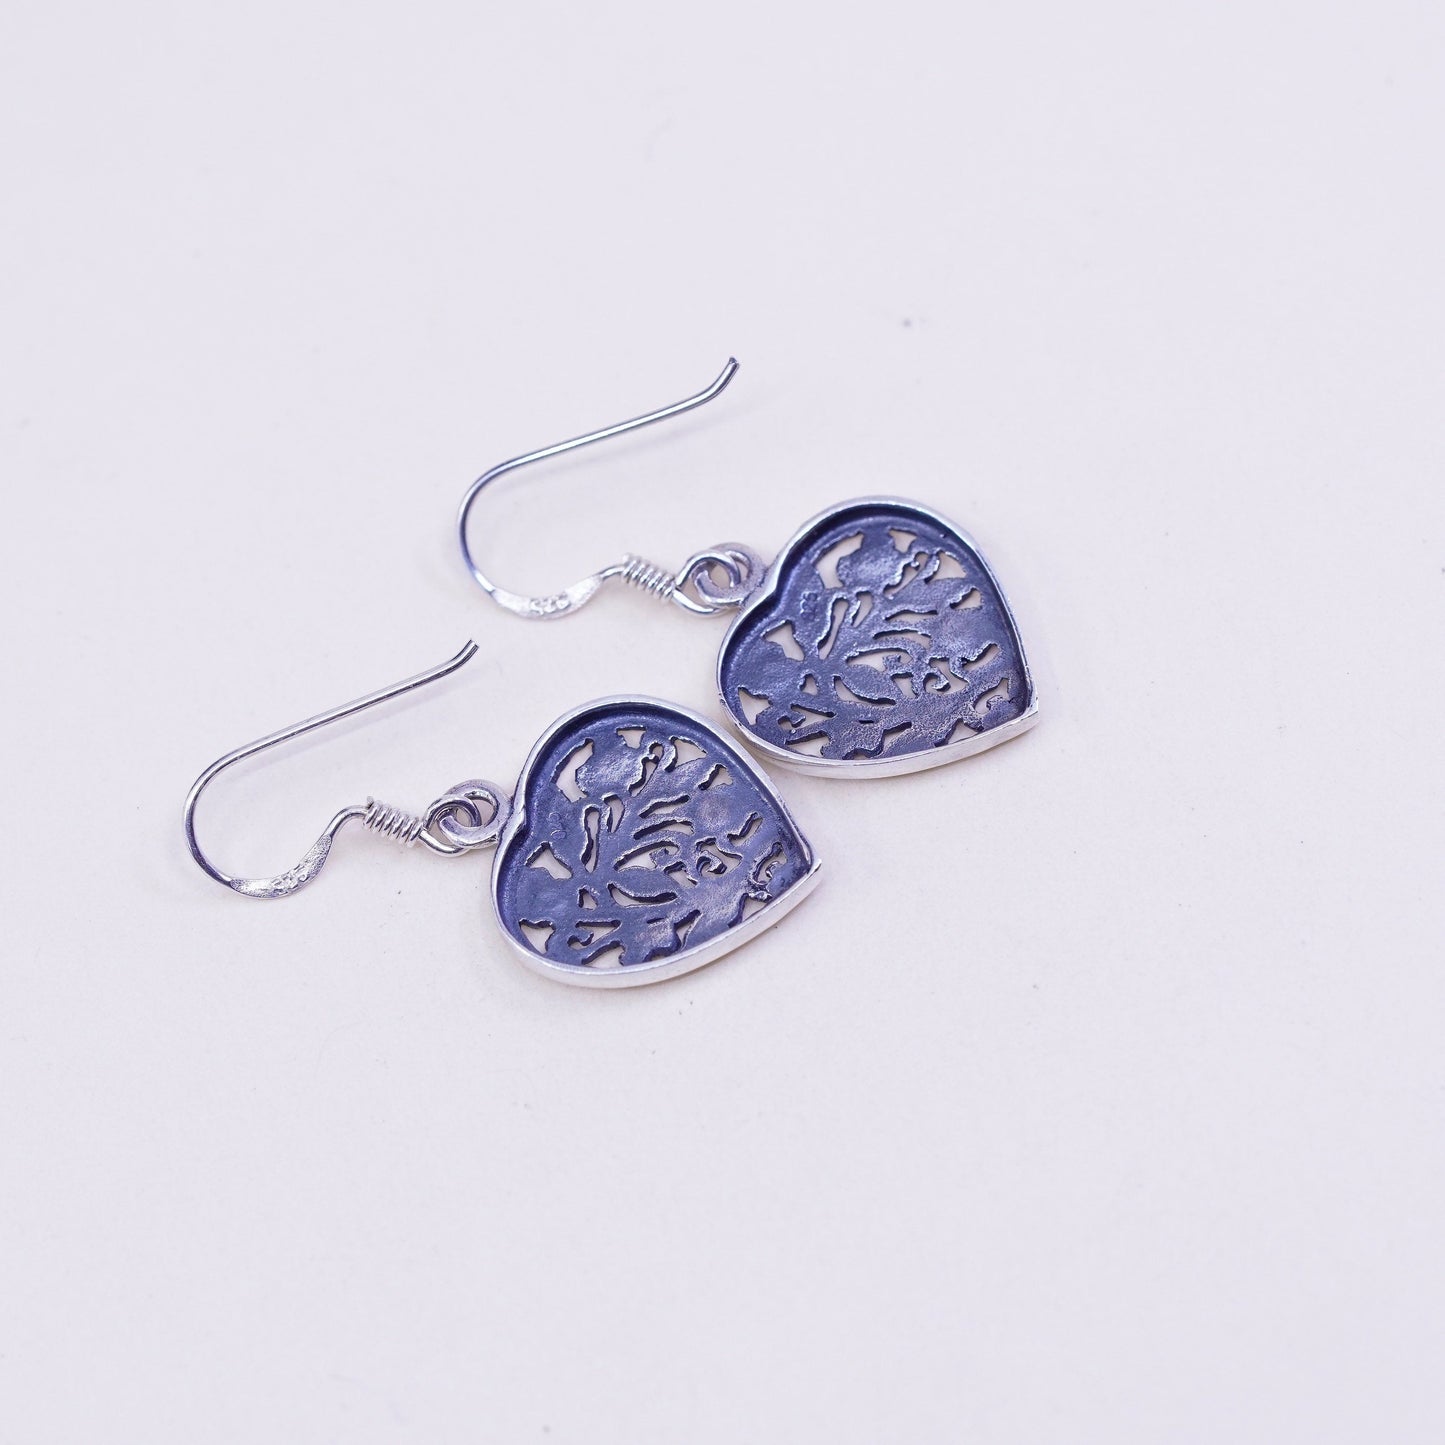 Vintage sterling silver handmade earrings, floral 925 filigree heart